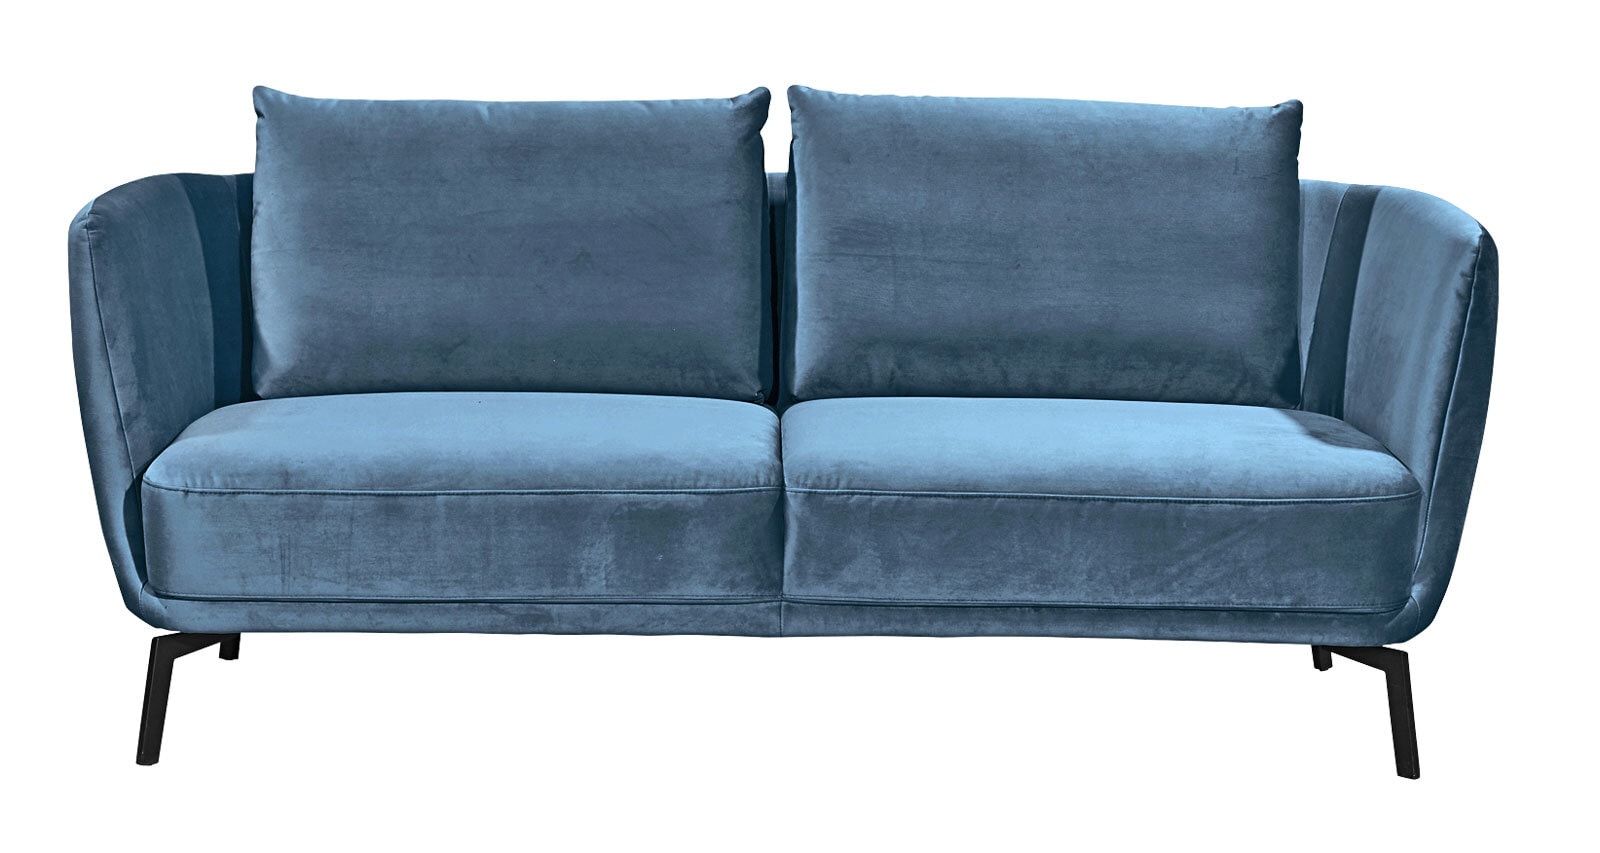 SCHÖNER WOHNEN-Kollektion Sofa 2,5 Sitzer PEARL Stoff Velvet blaugrau